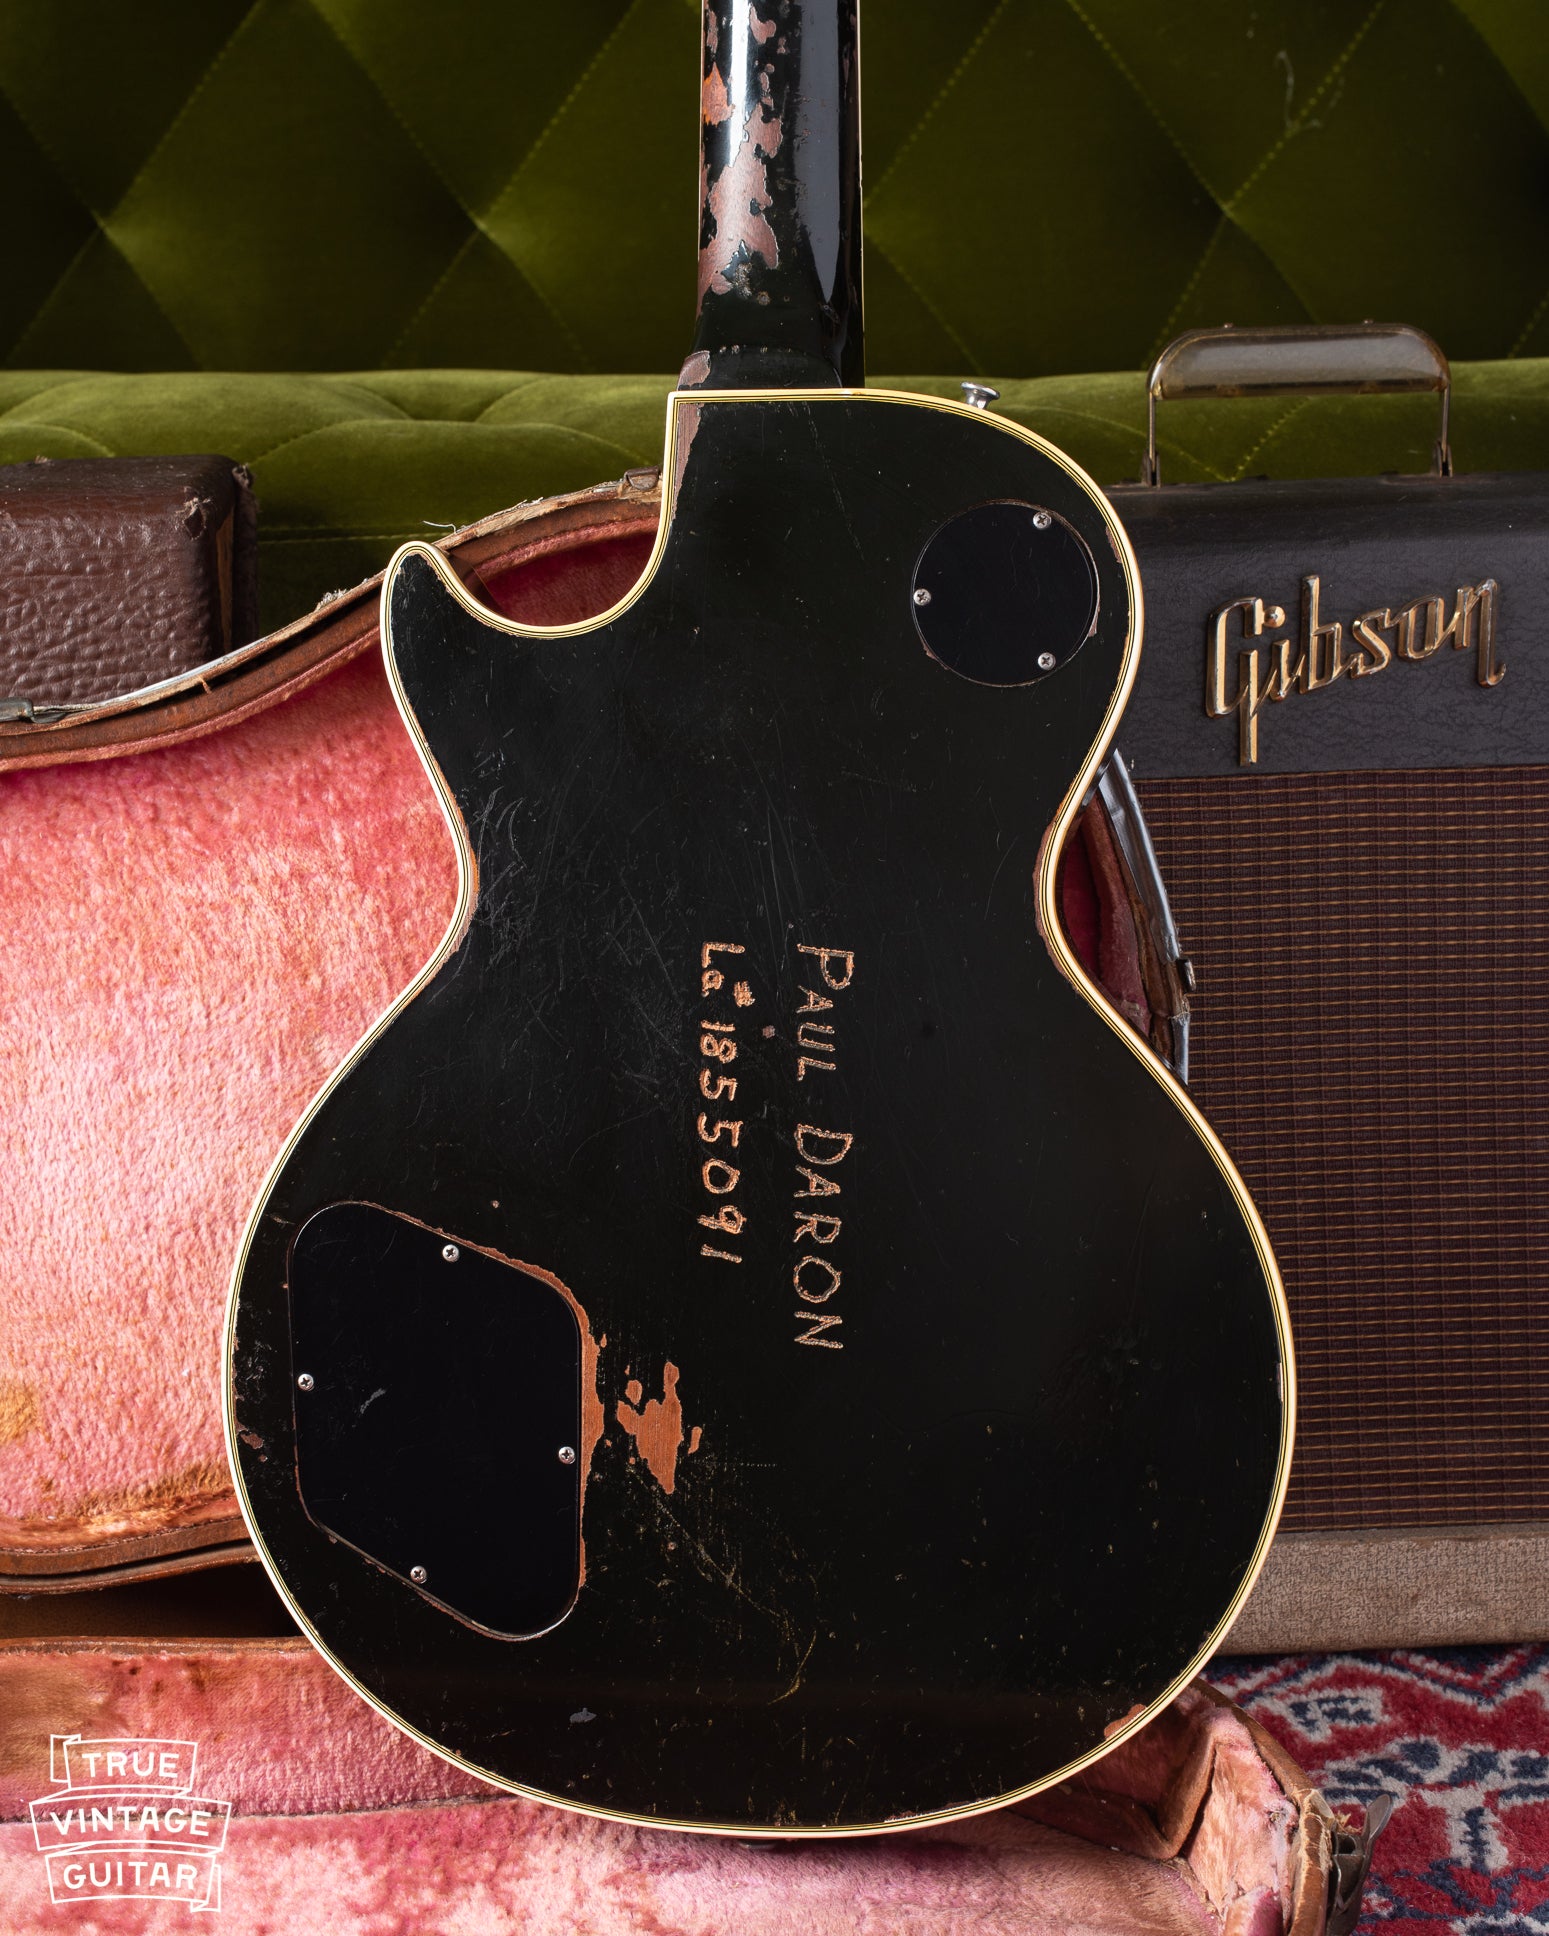 Back of body of Gibson Les Paul Custom 1960